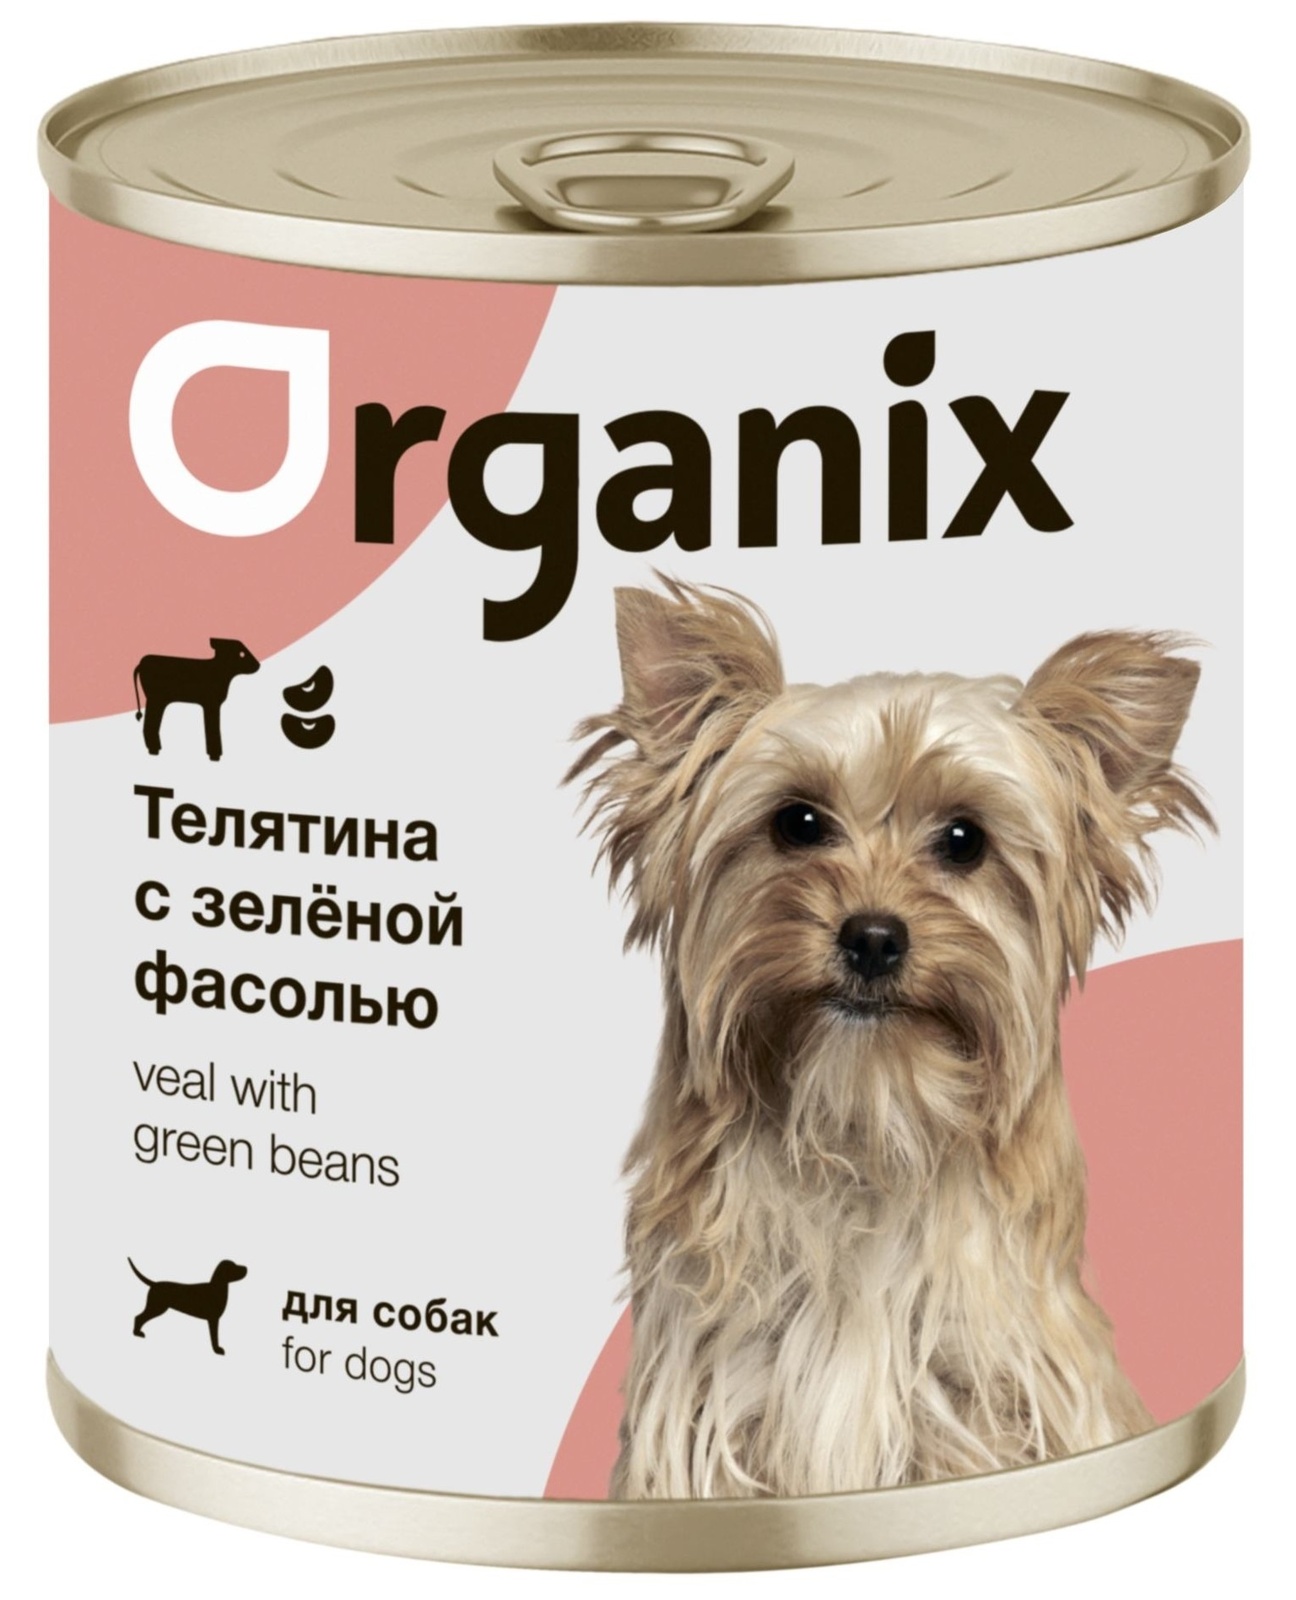 Organix консервы Organix консервы для собак Телятина с зеленой фасолью (400 г) organix консервы organix монобелковые премиум консервы для собак с кониной 400 г